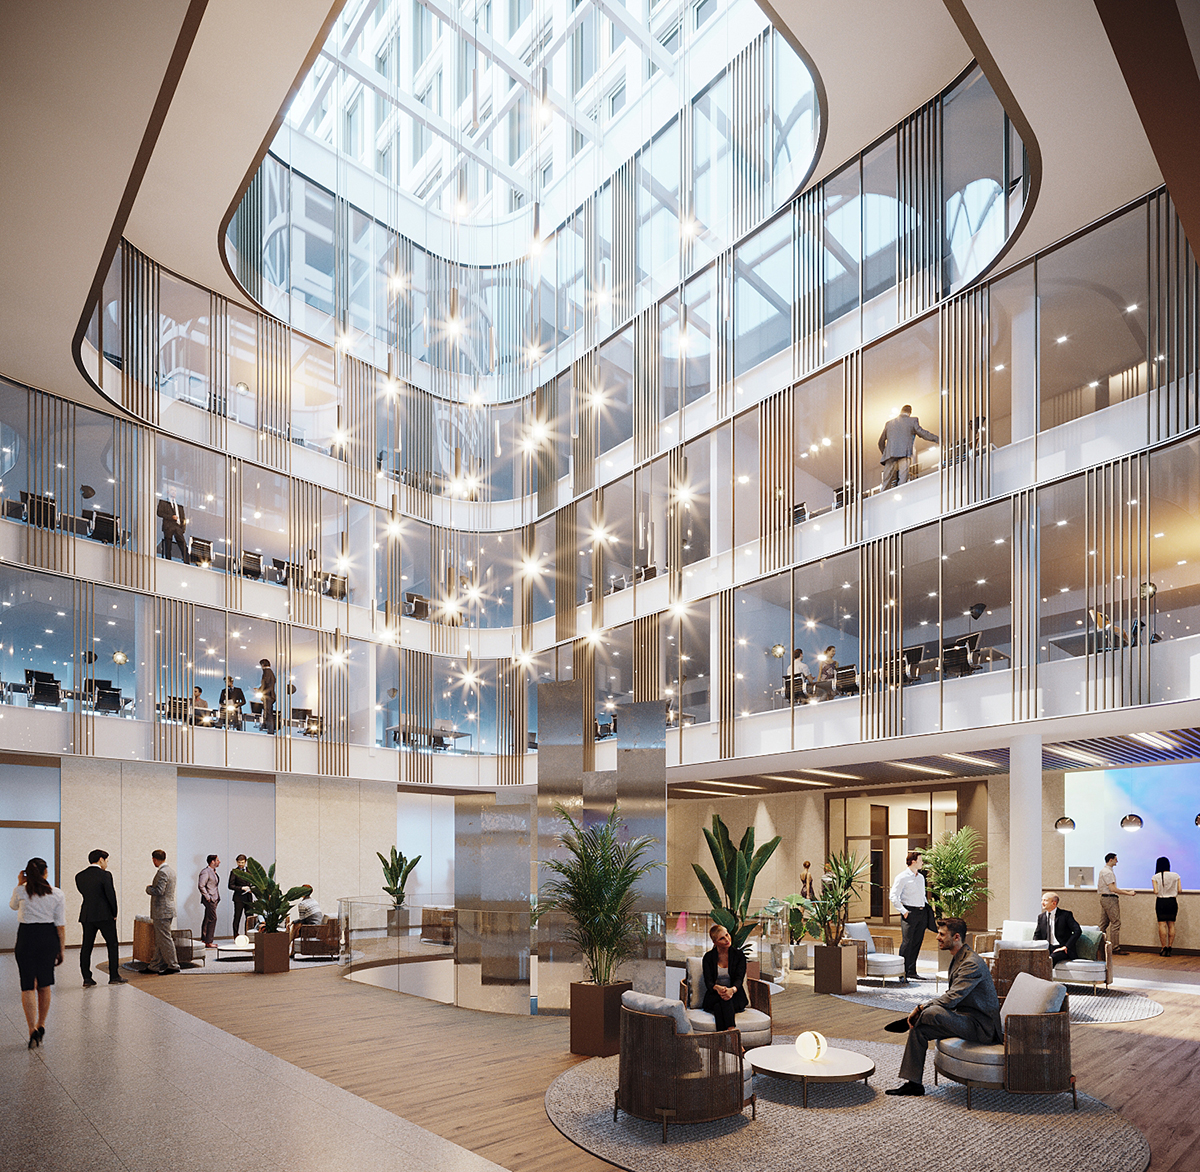 Dans le même esprit, notre bureau d’architecture a conçu un grand atrium qui baigne les lieux de lumière.